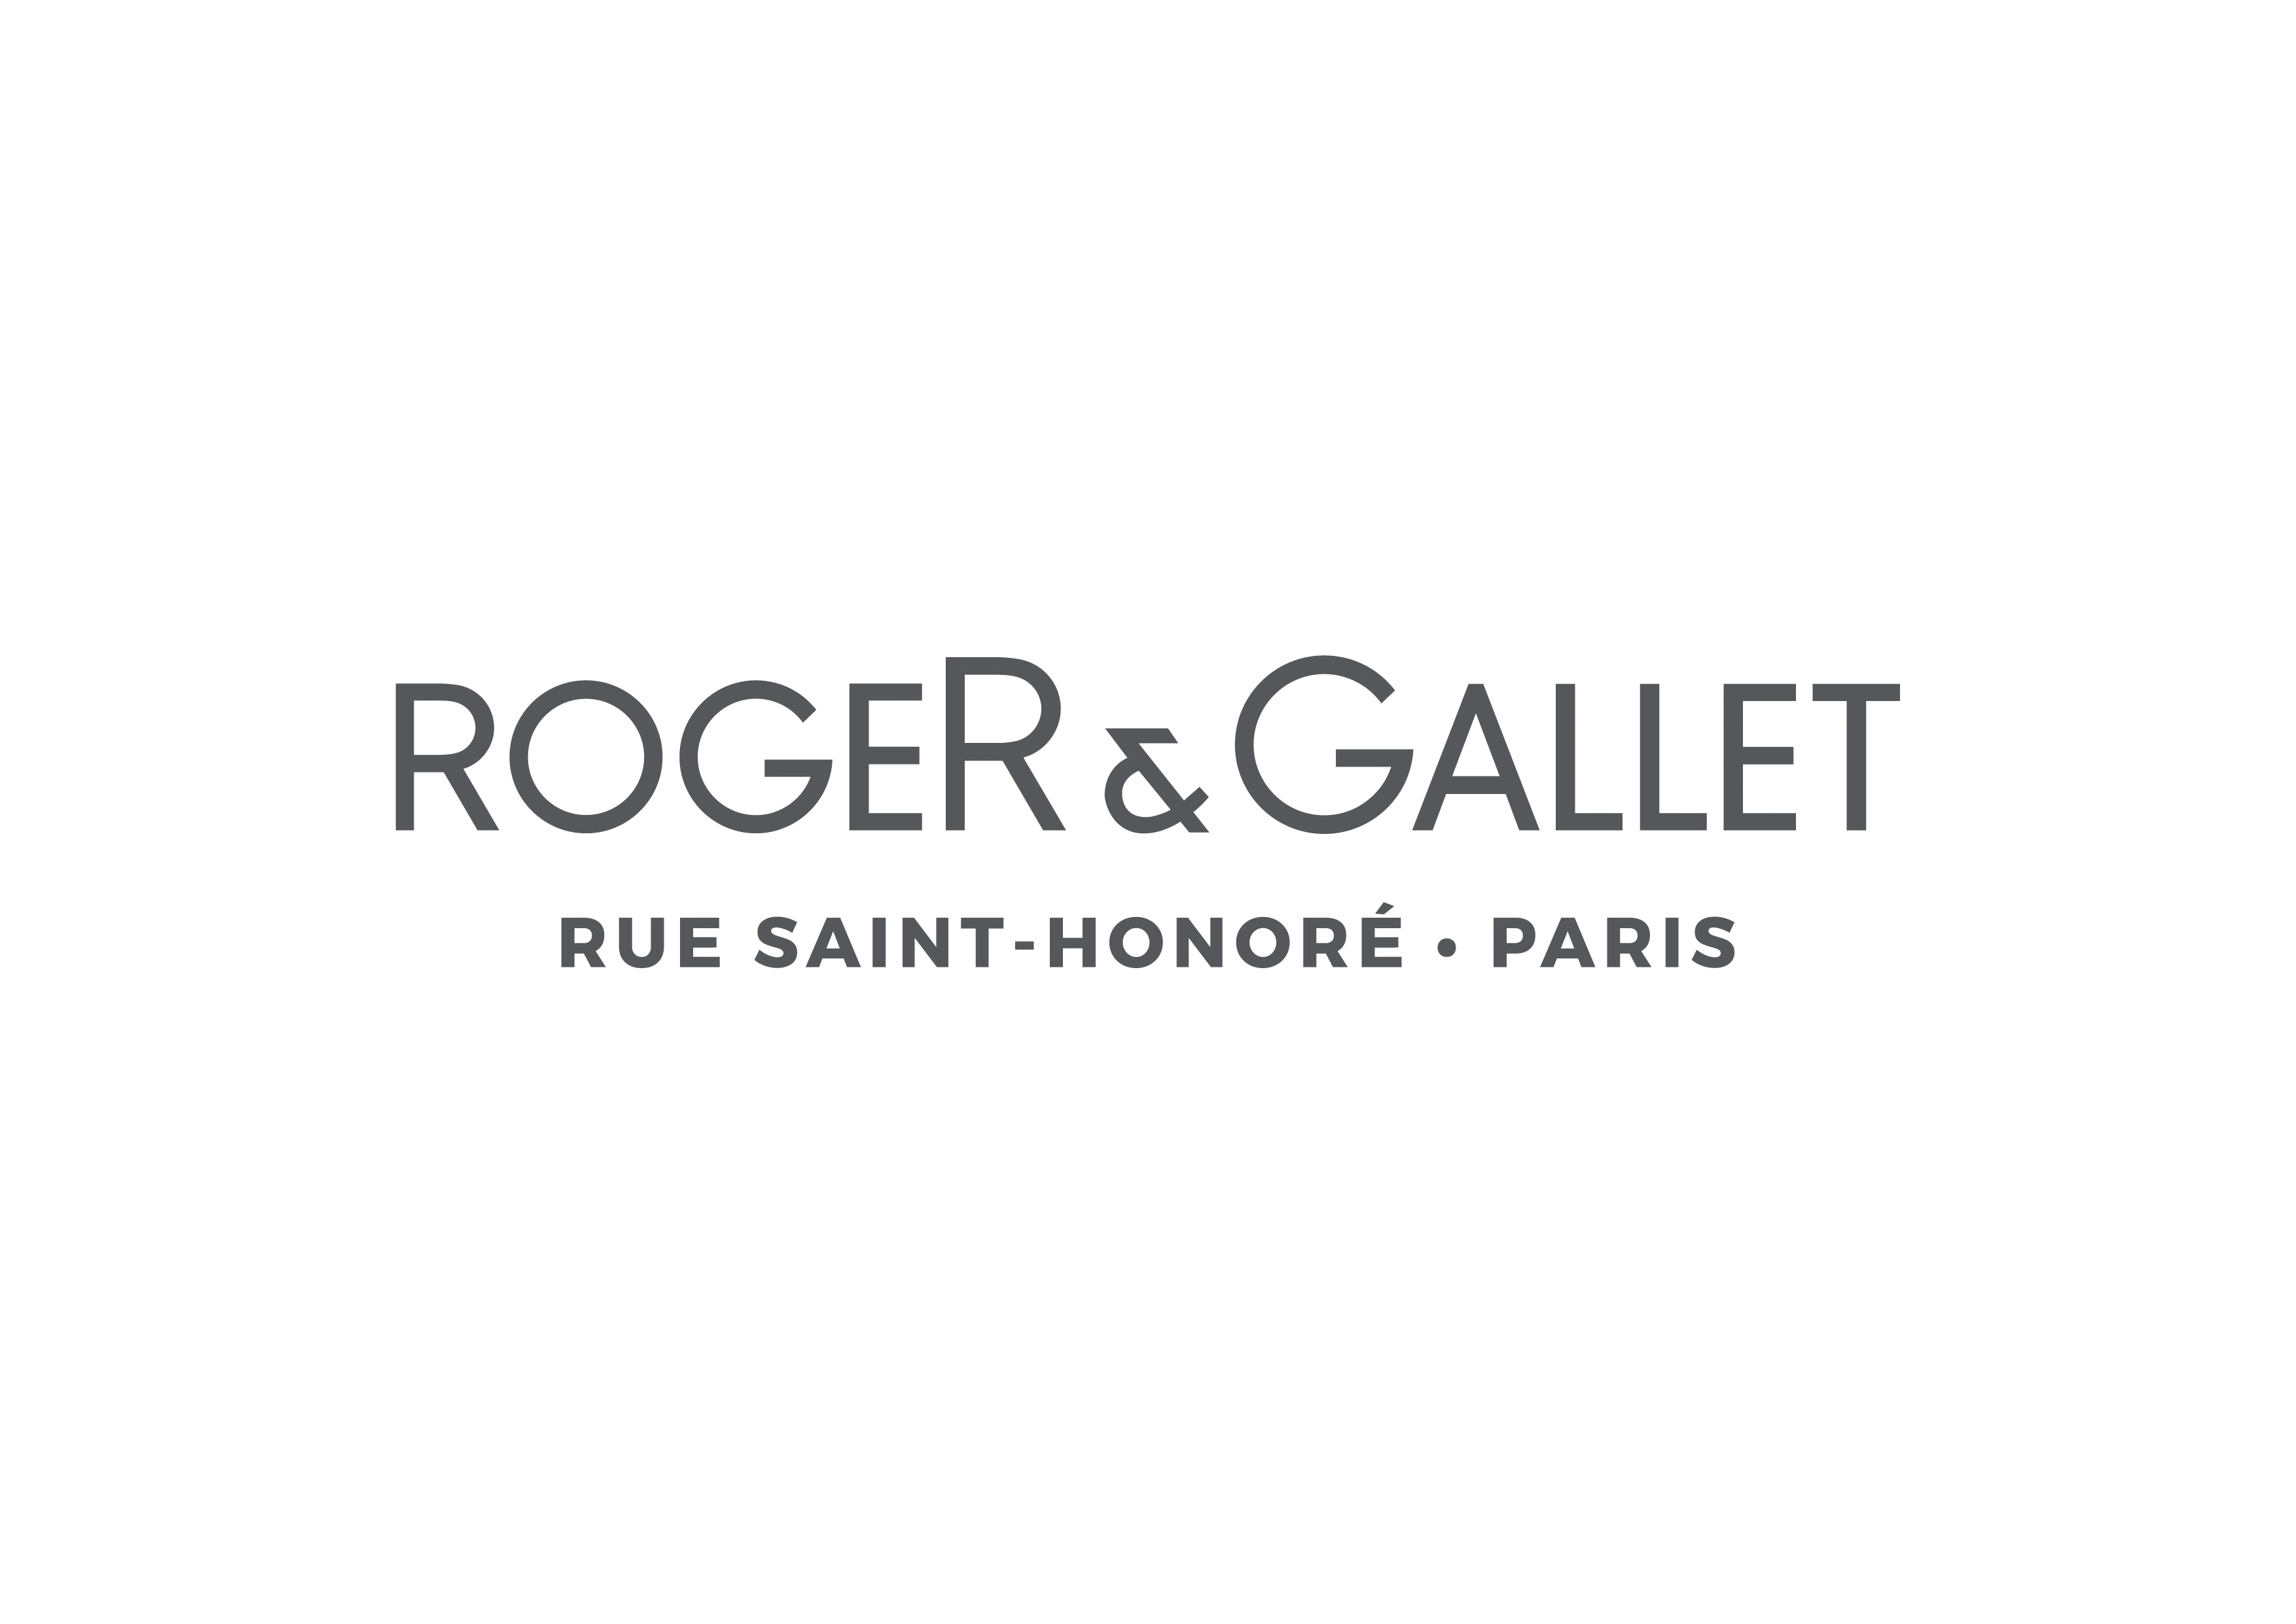 Roger & Gallet Lines